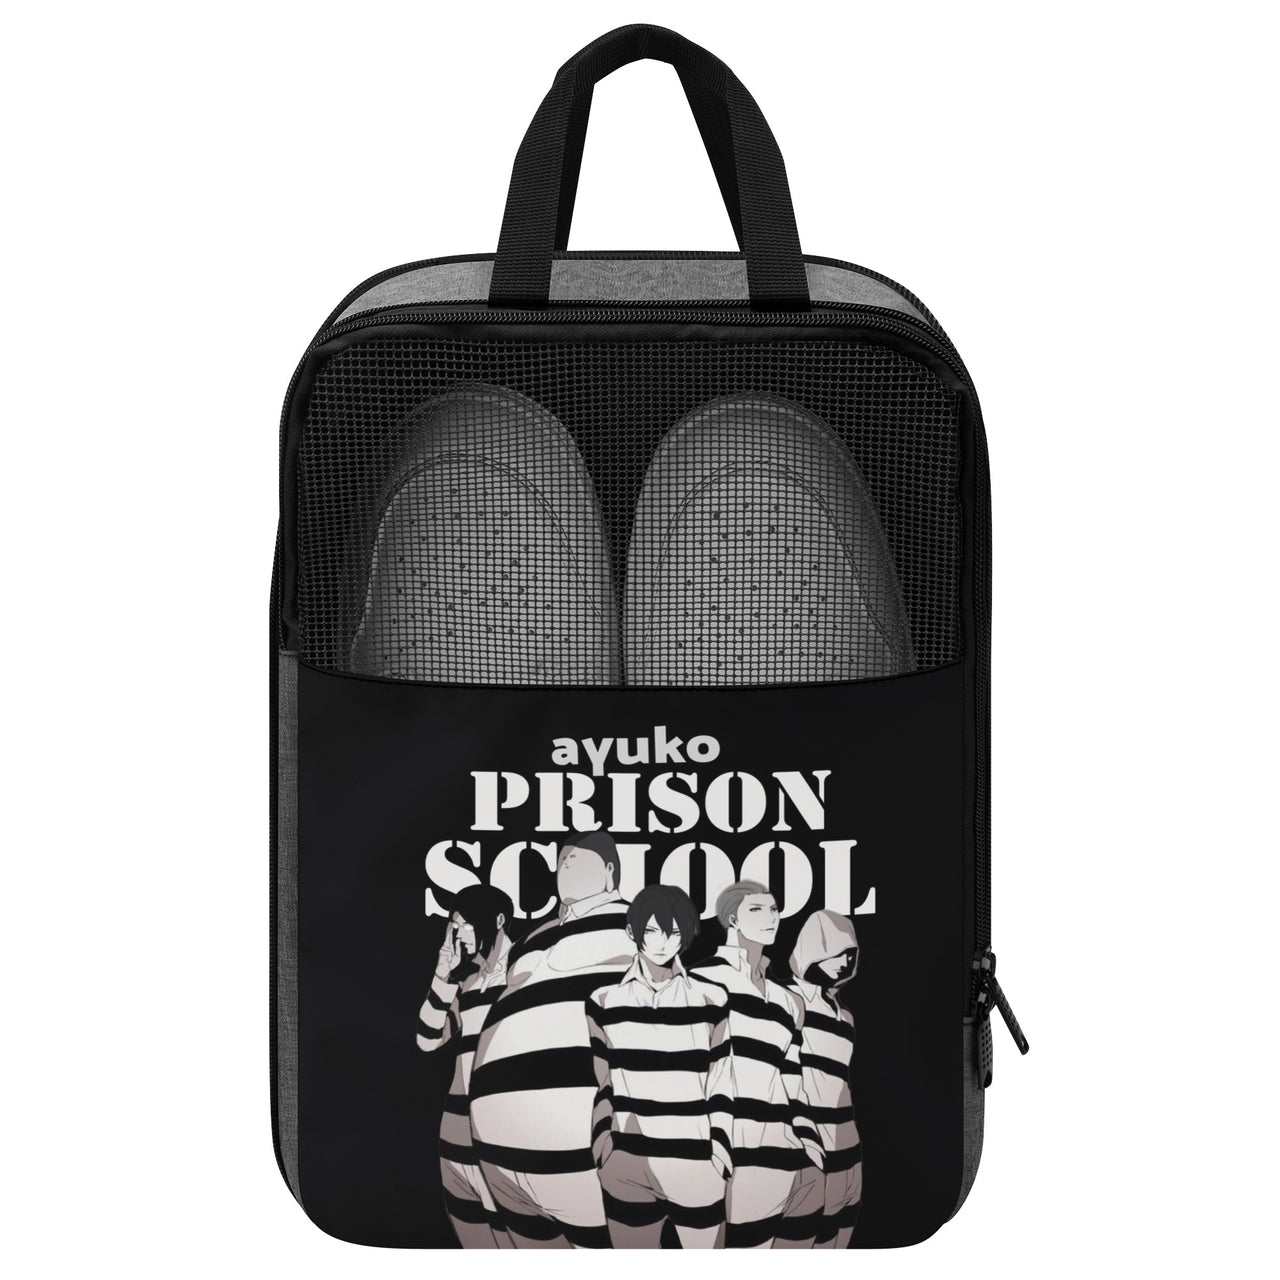 Borsa per scarpe anime della scuola carceraria